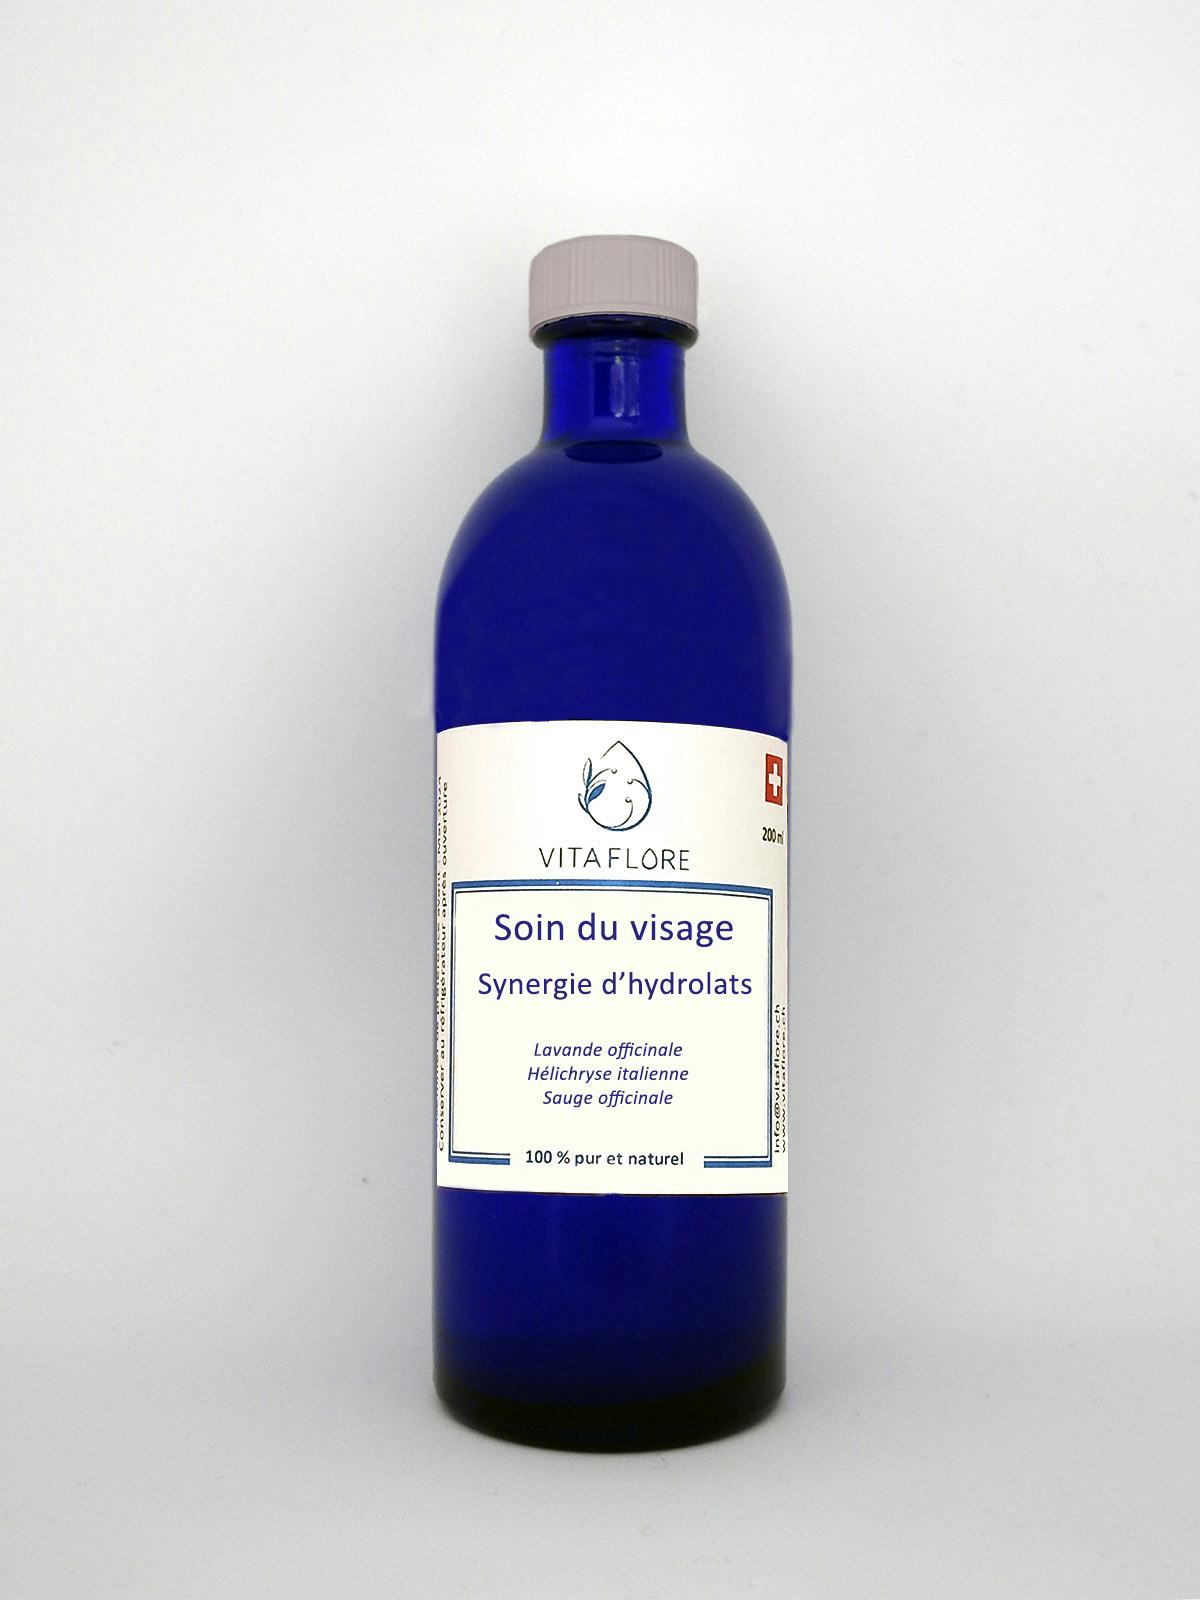 Synergie d’hydrolats – Soin du visage, produit artisanal en vente directe en Suisse